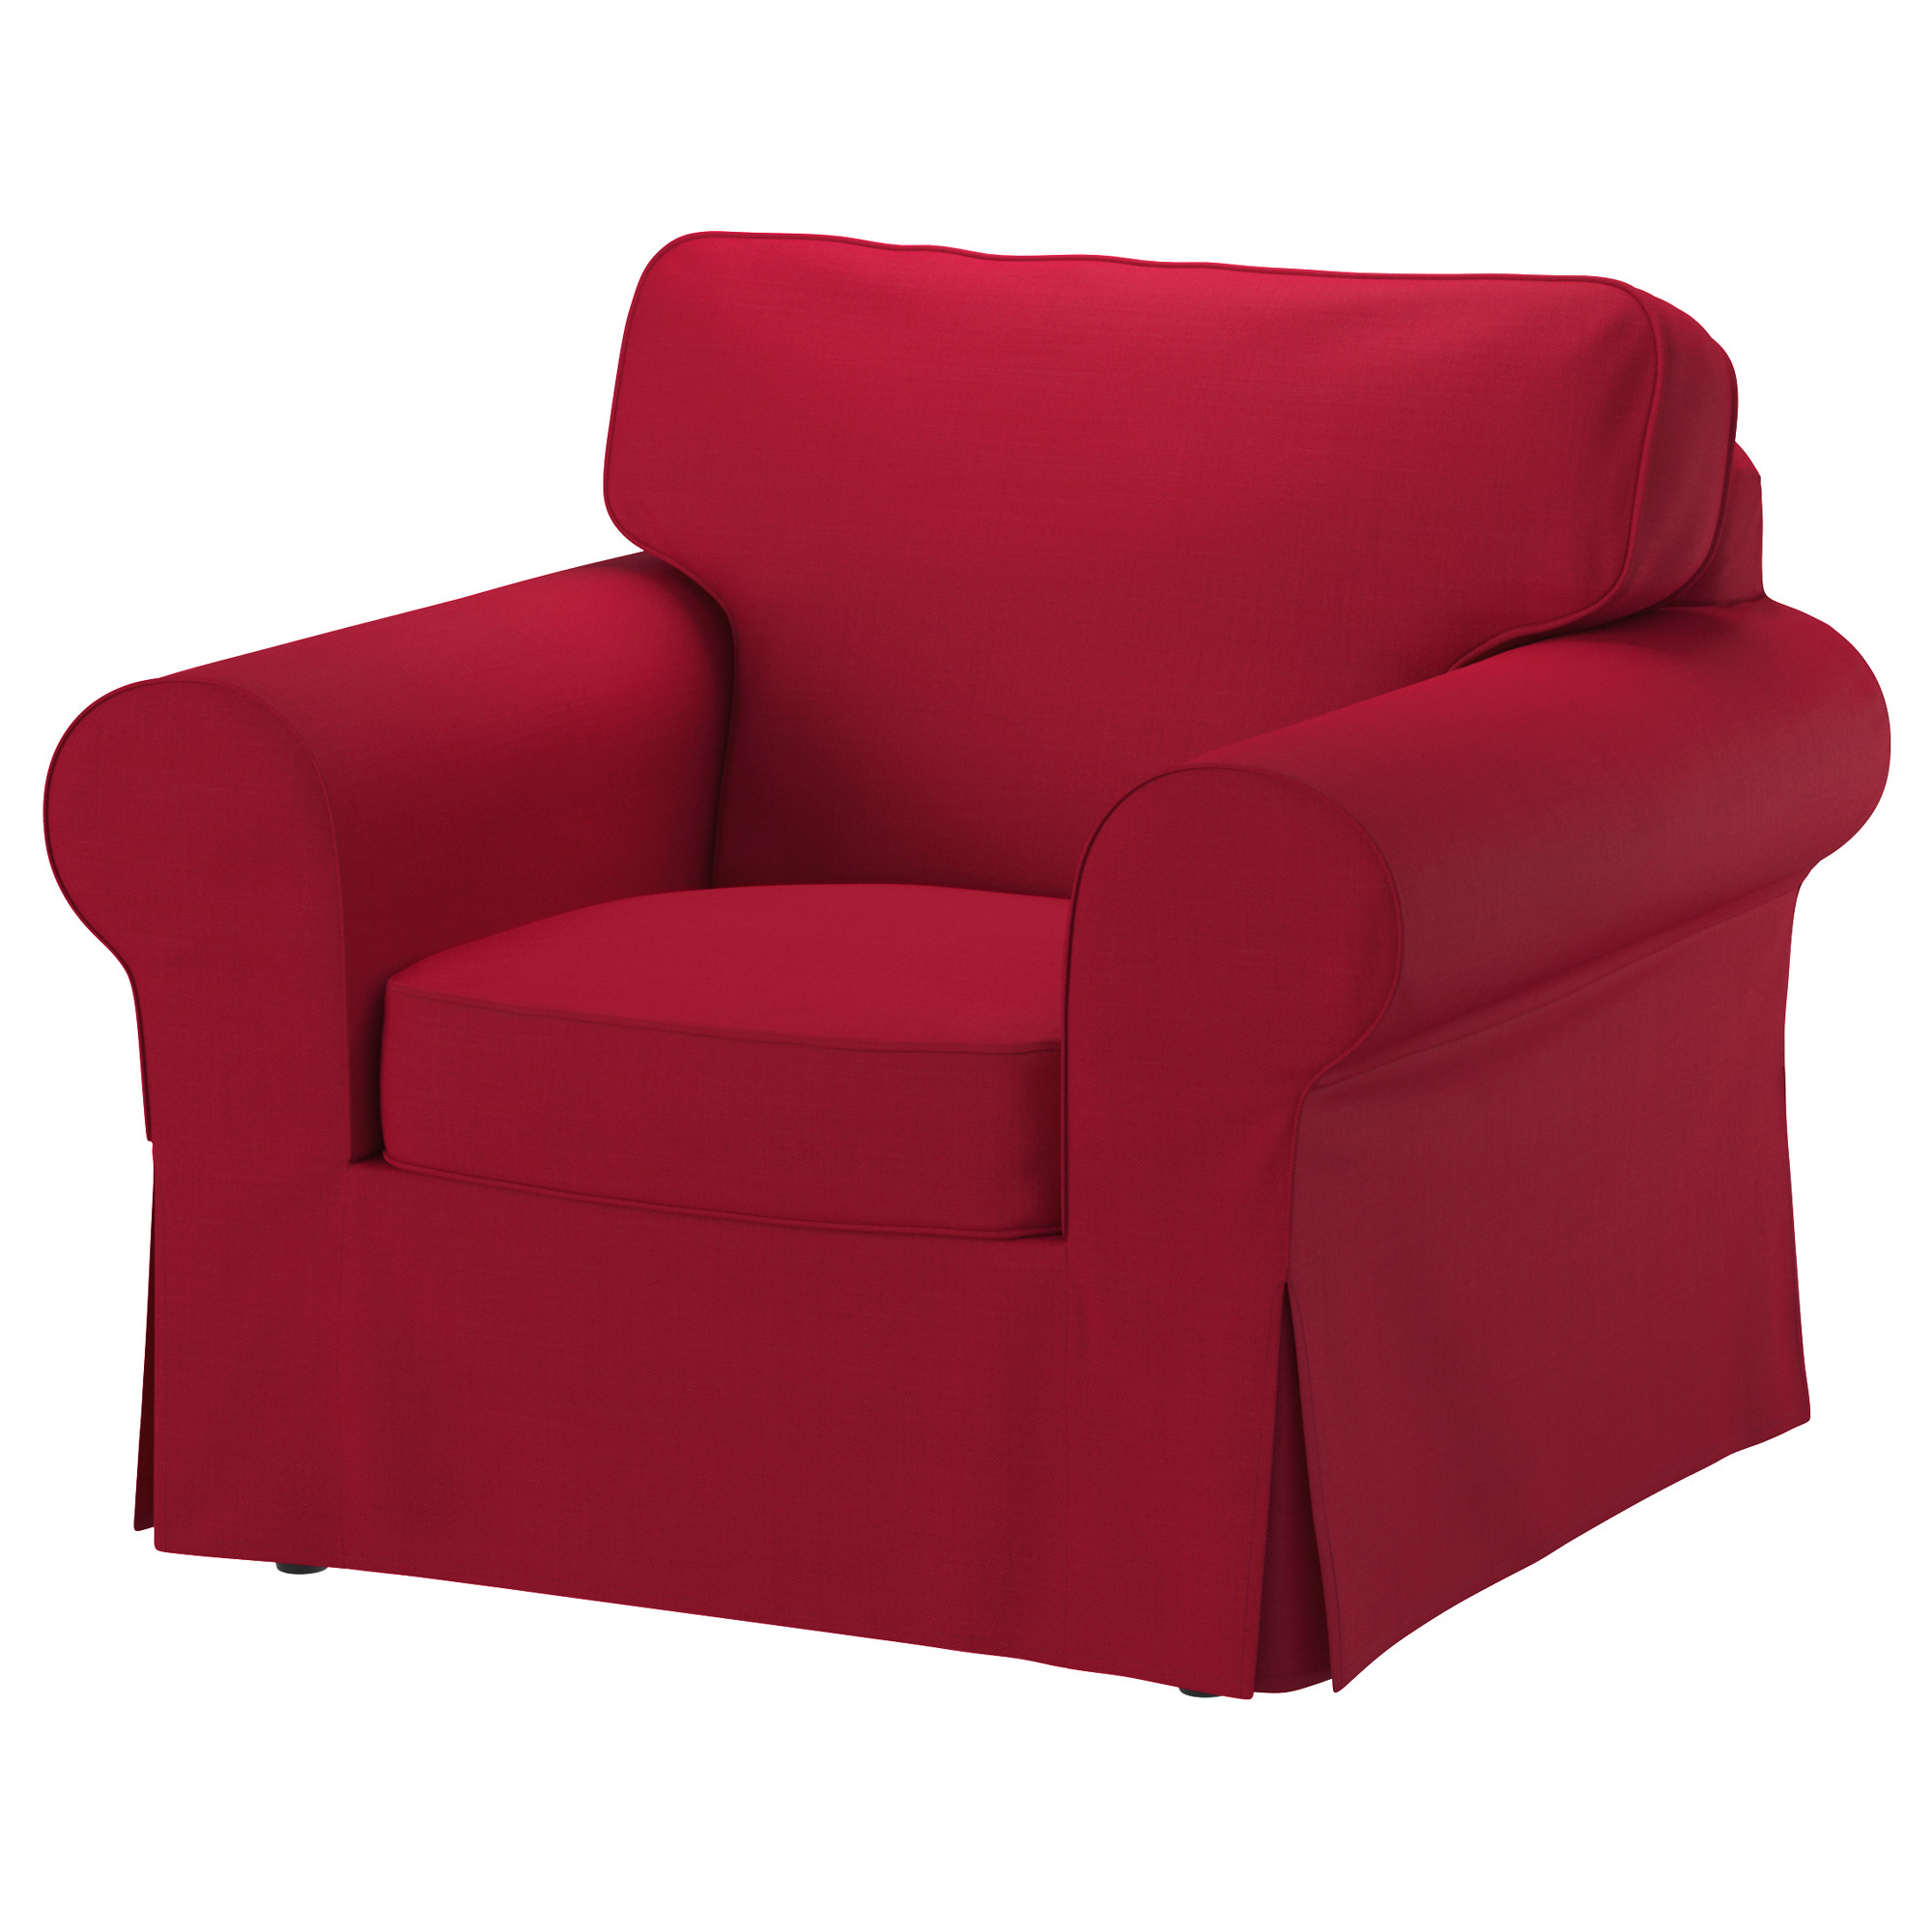 chair cushion target